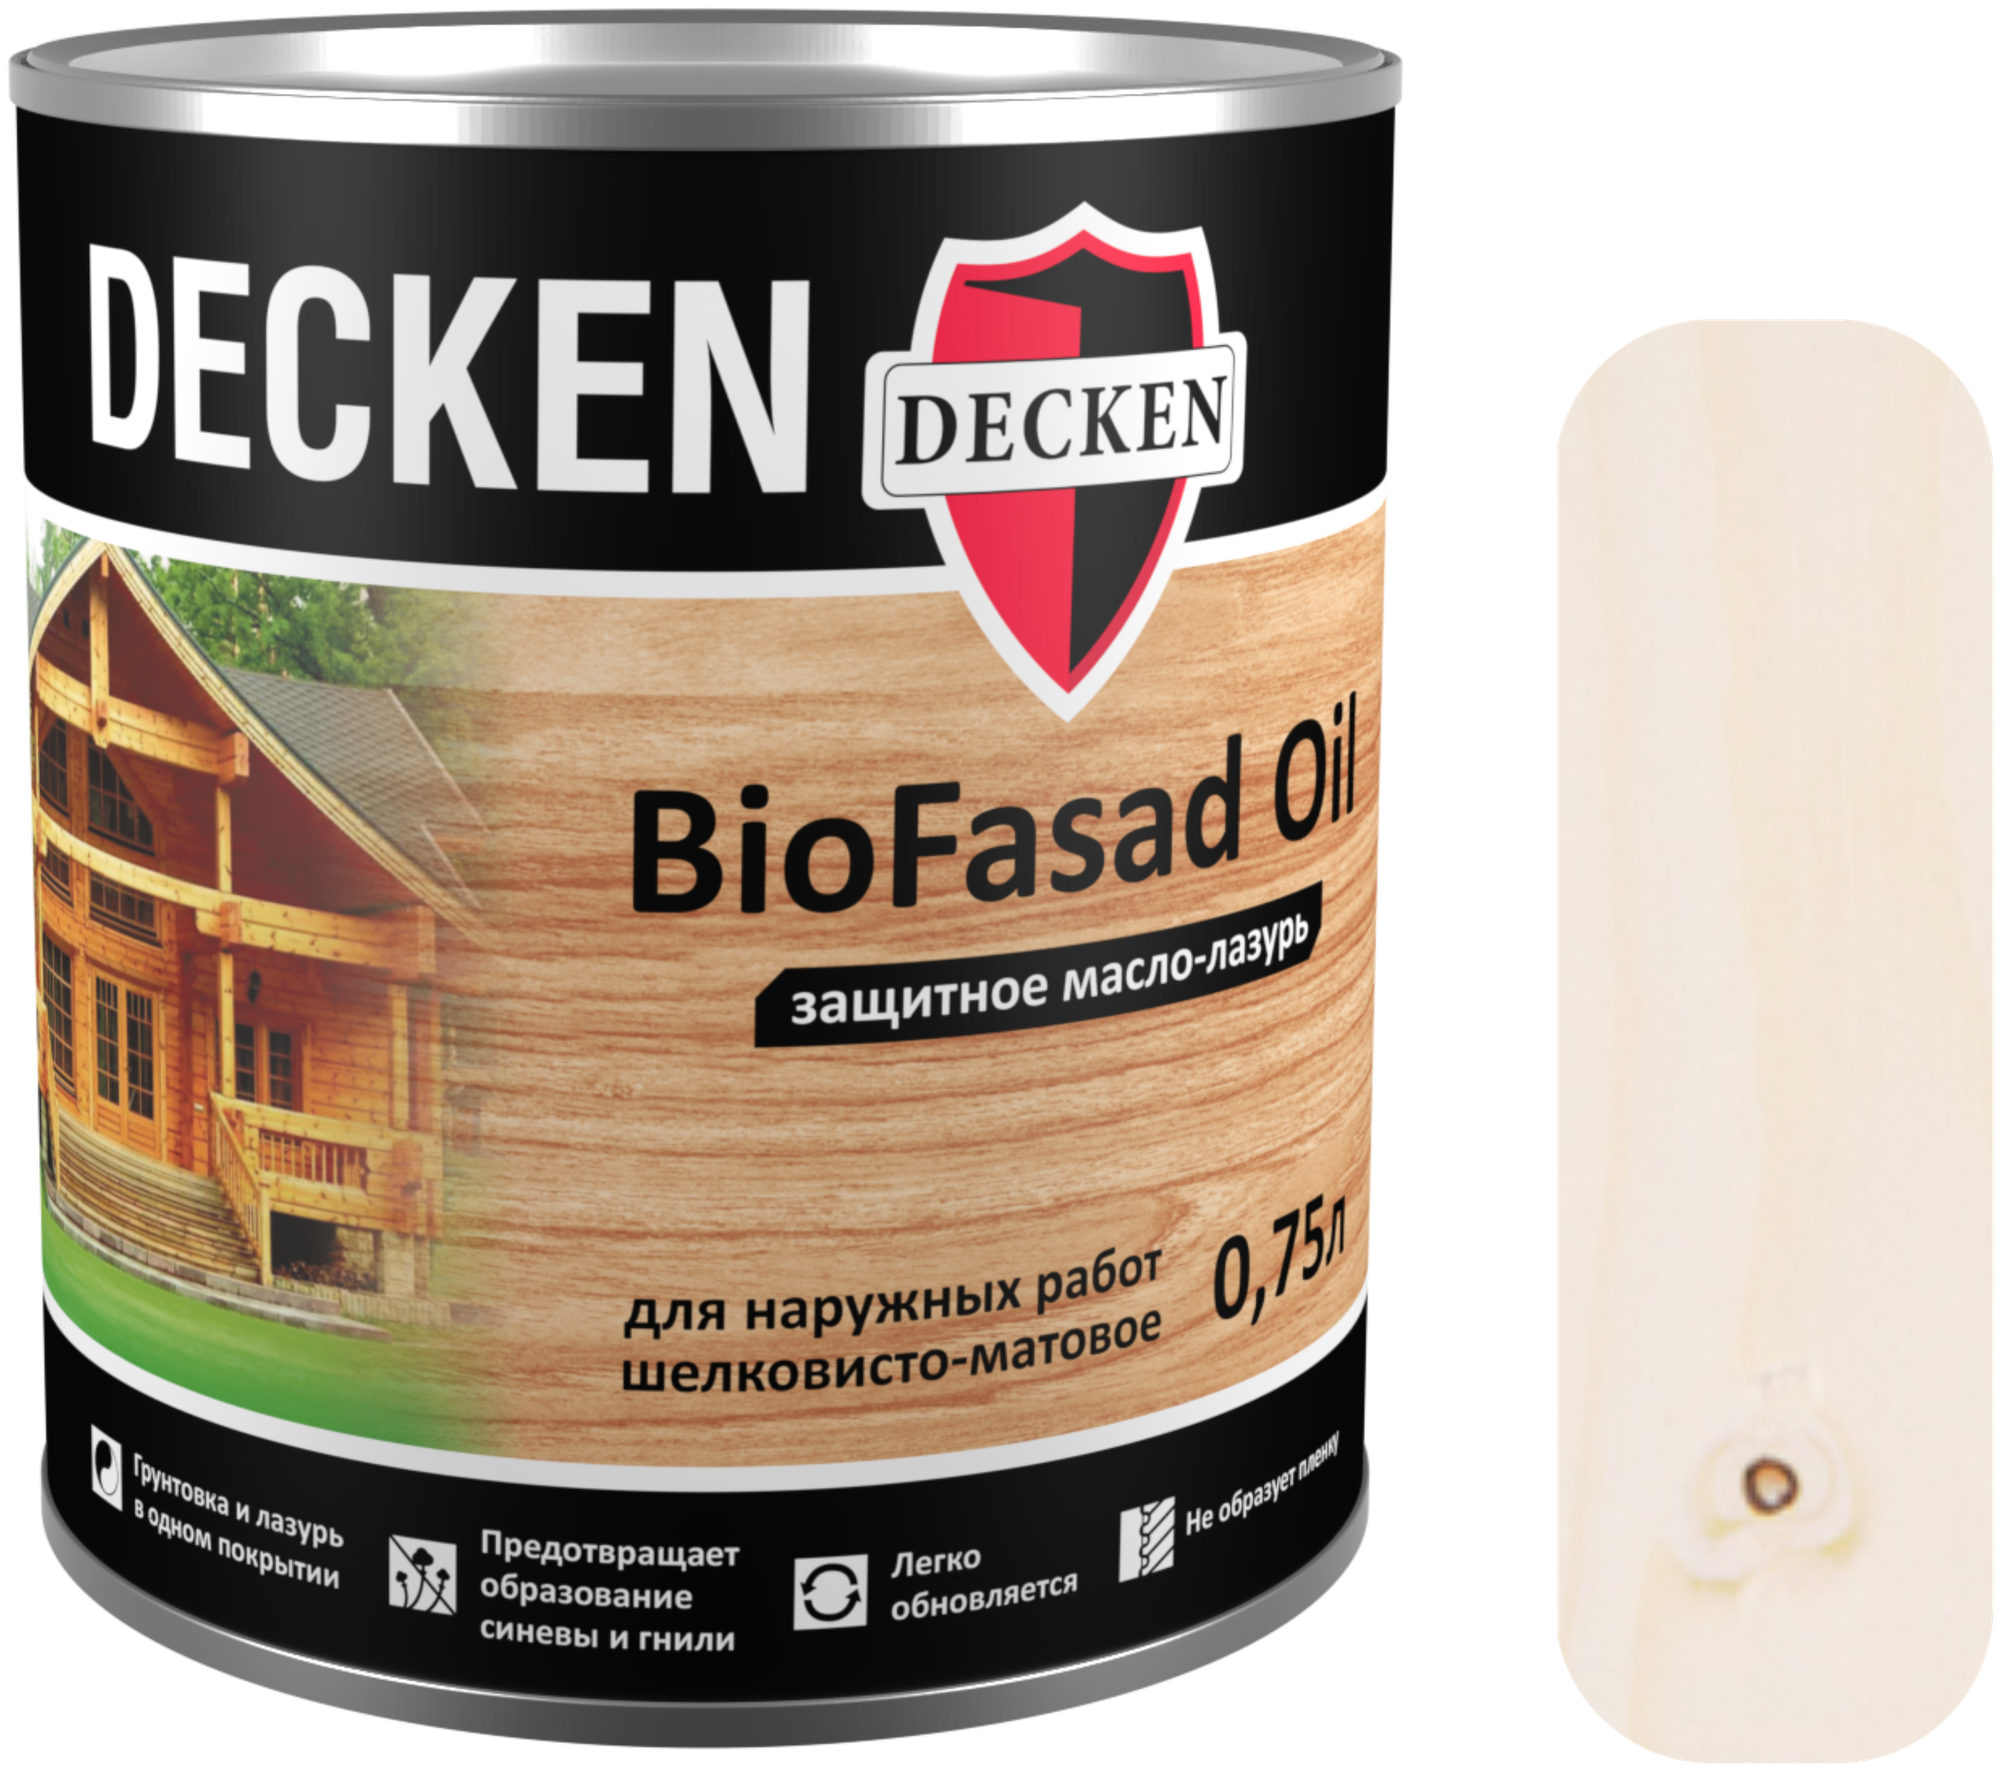 Защитное масло-лазурь Decken BioFasad Oil